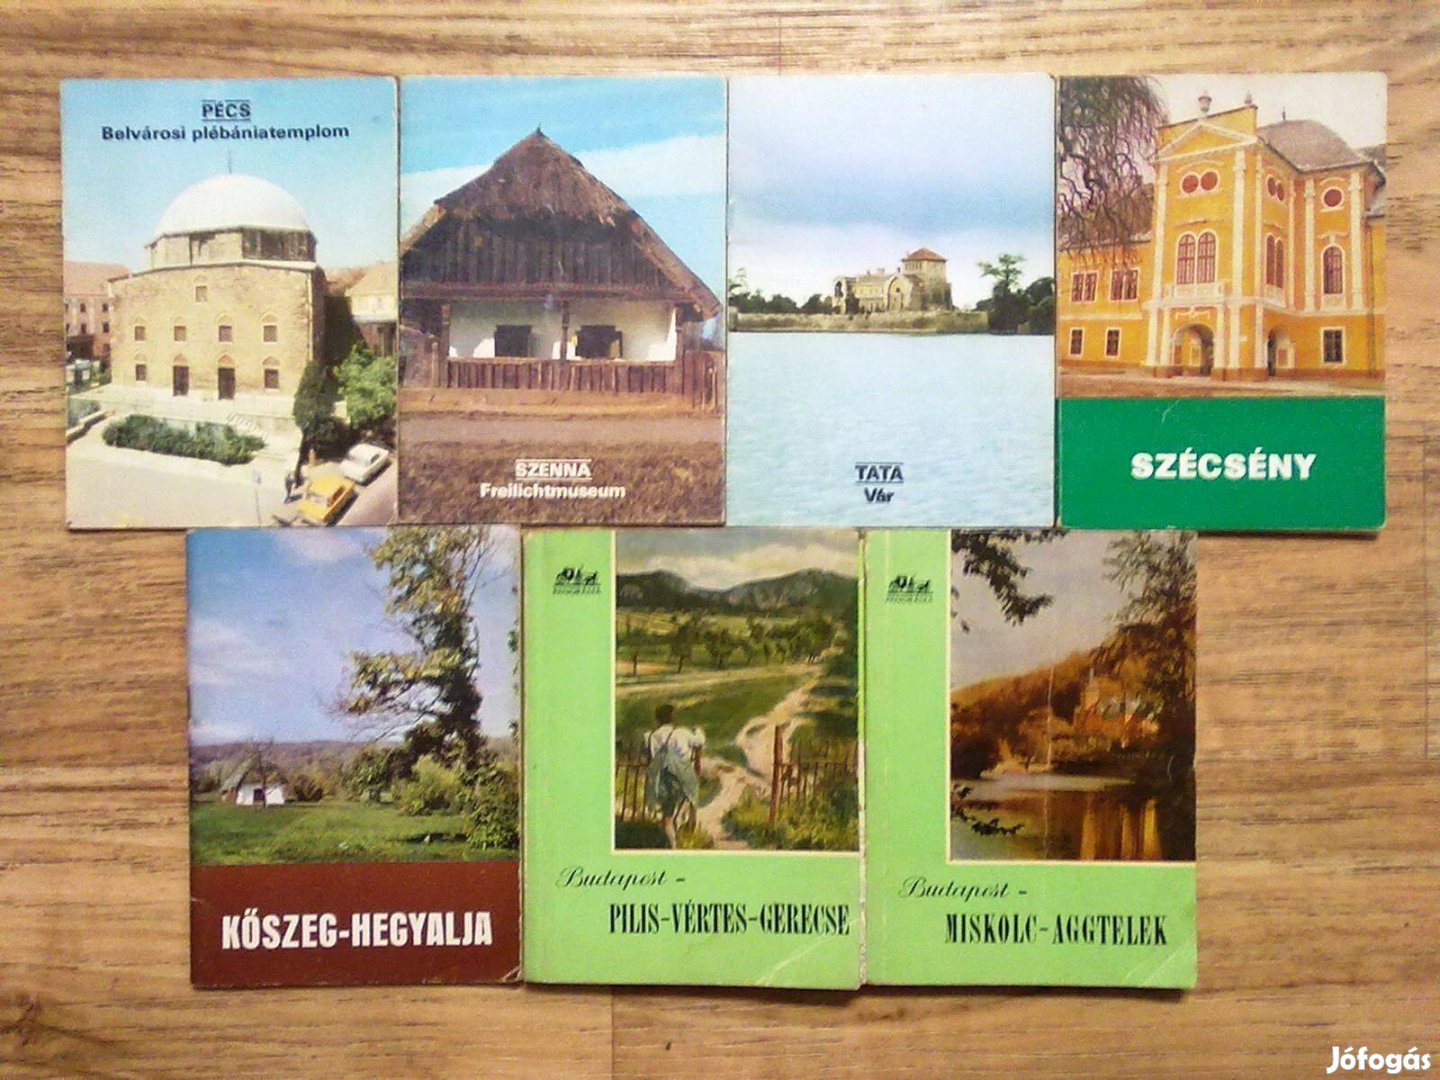 Turista és útikönyvek (7 db) egy csomagban